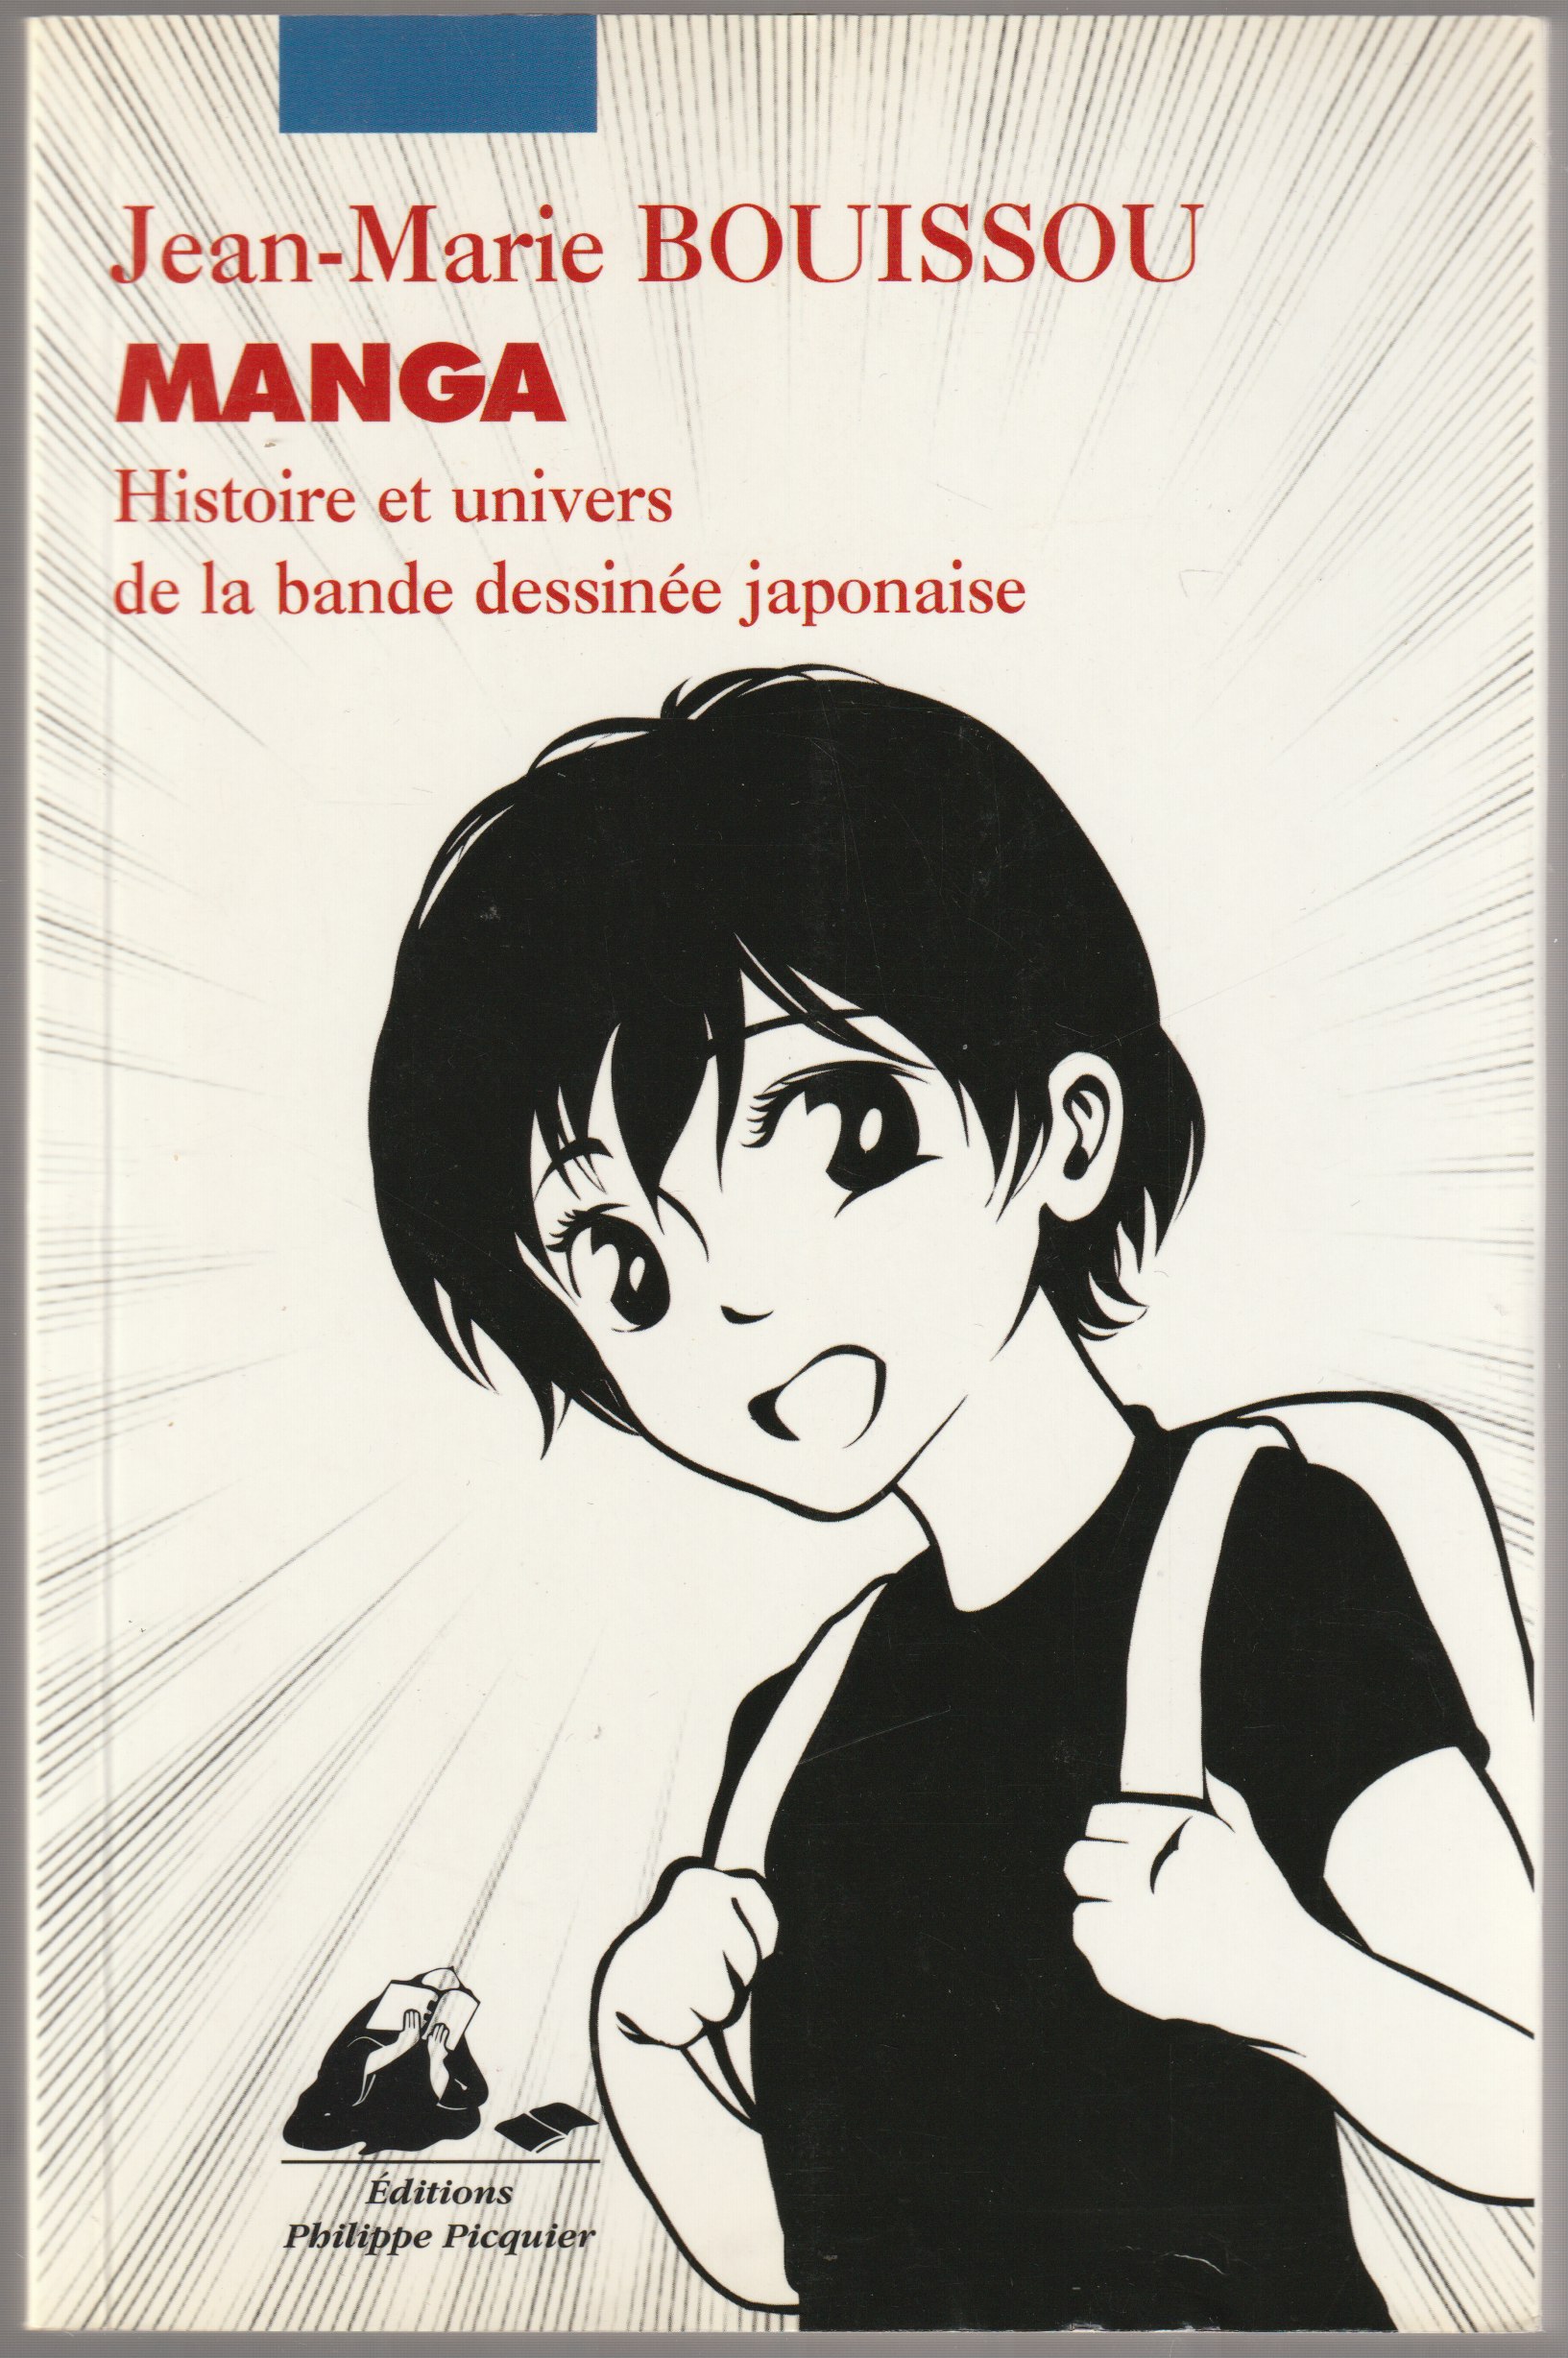 Manga : histoire et univers de la bande dessinee japonaise.